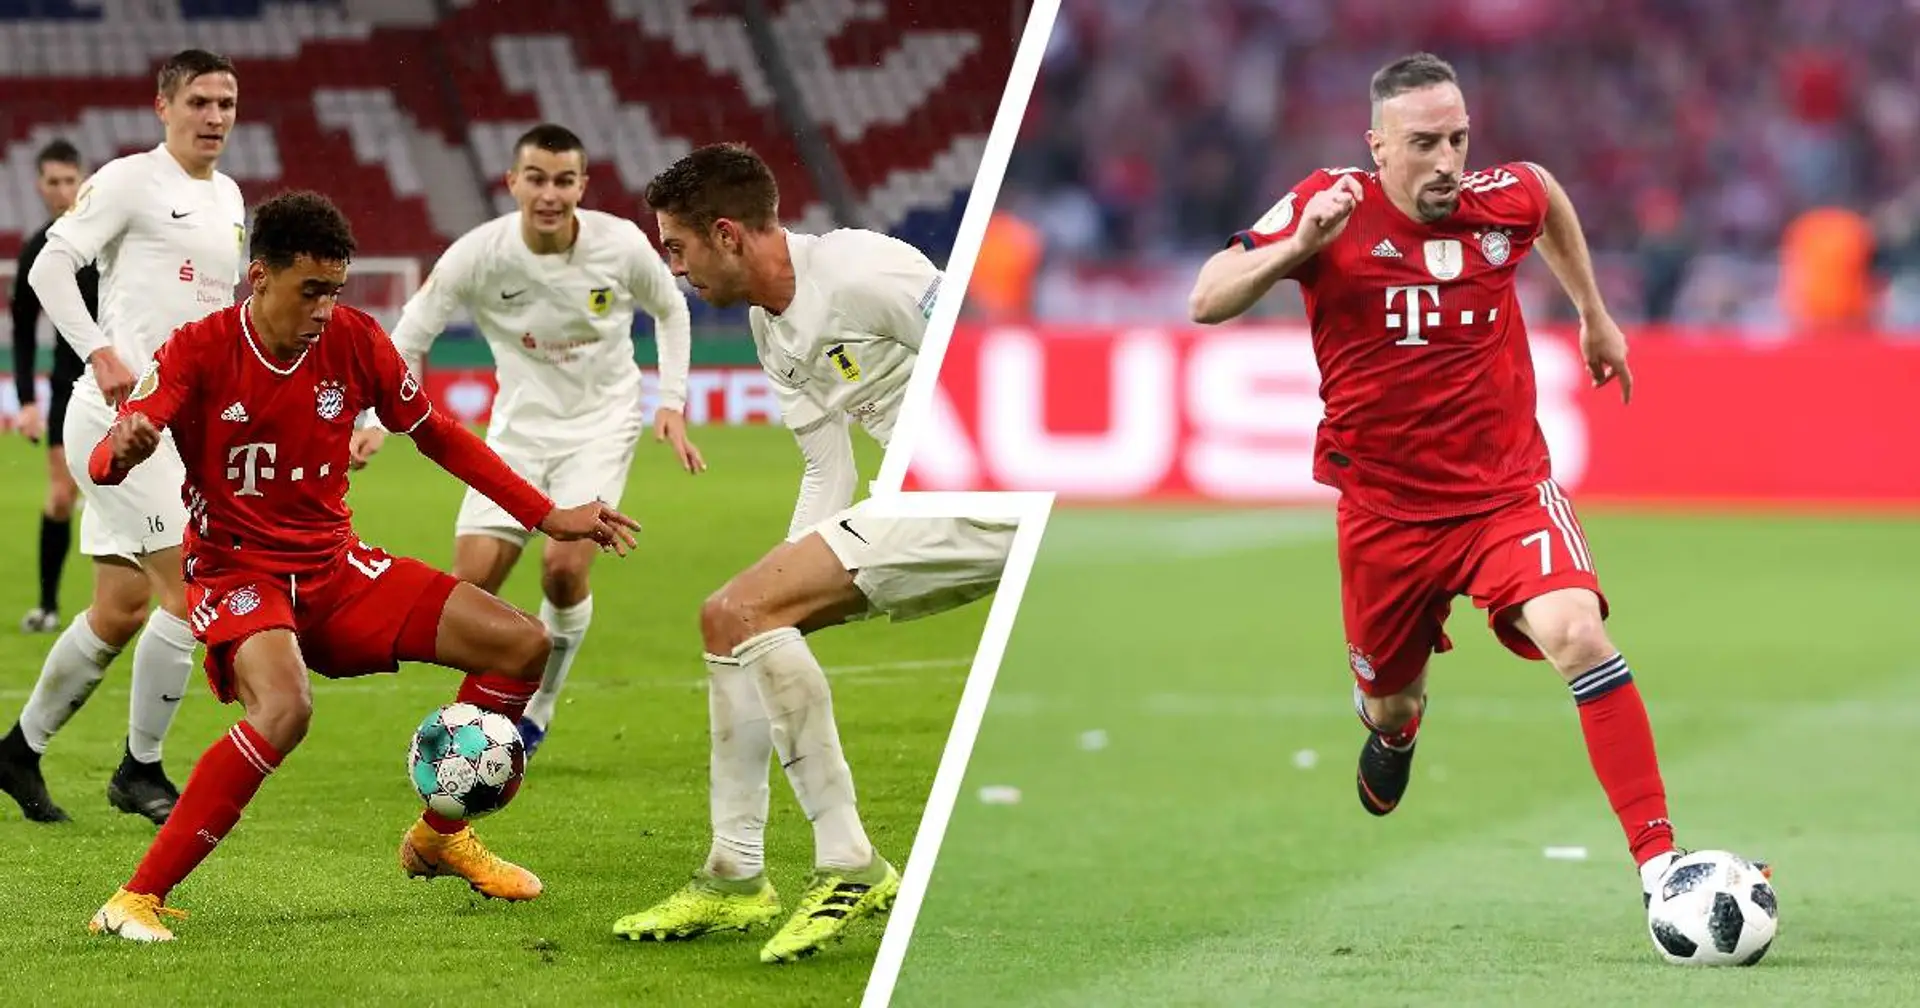 "Das hatte schon was von Riberys Glanz": Bayern-Fan-Community schwärmt von Musiala